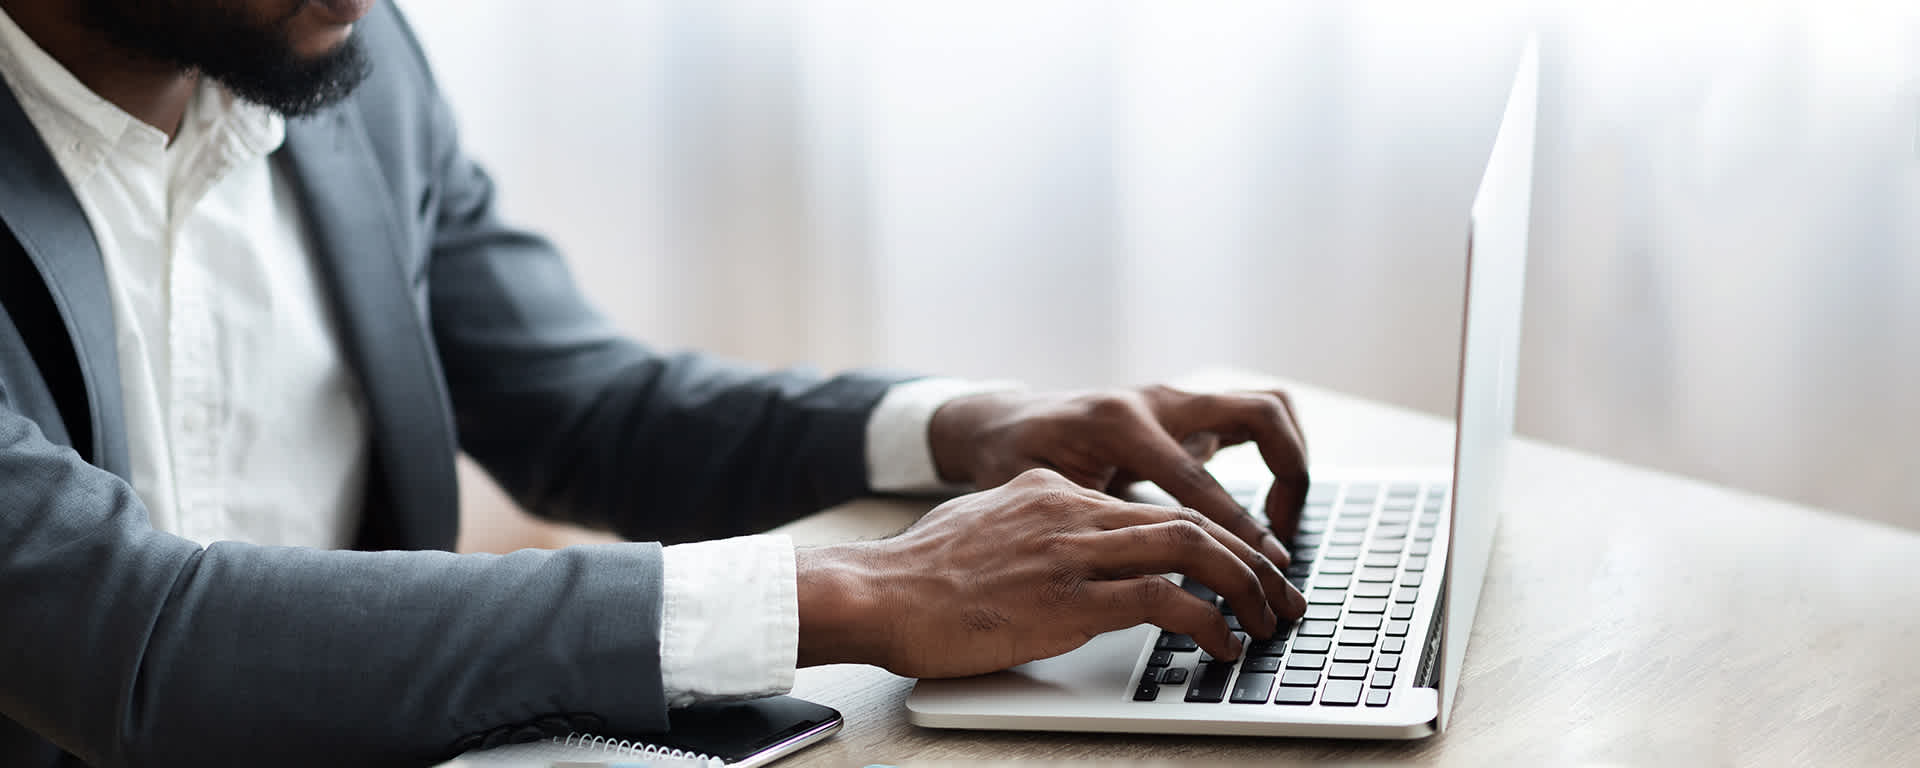 Employee working on laptop in modern office | Blog